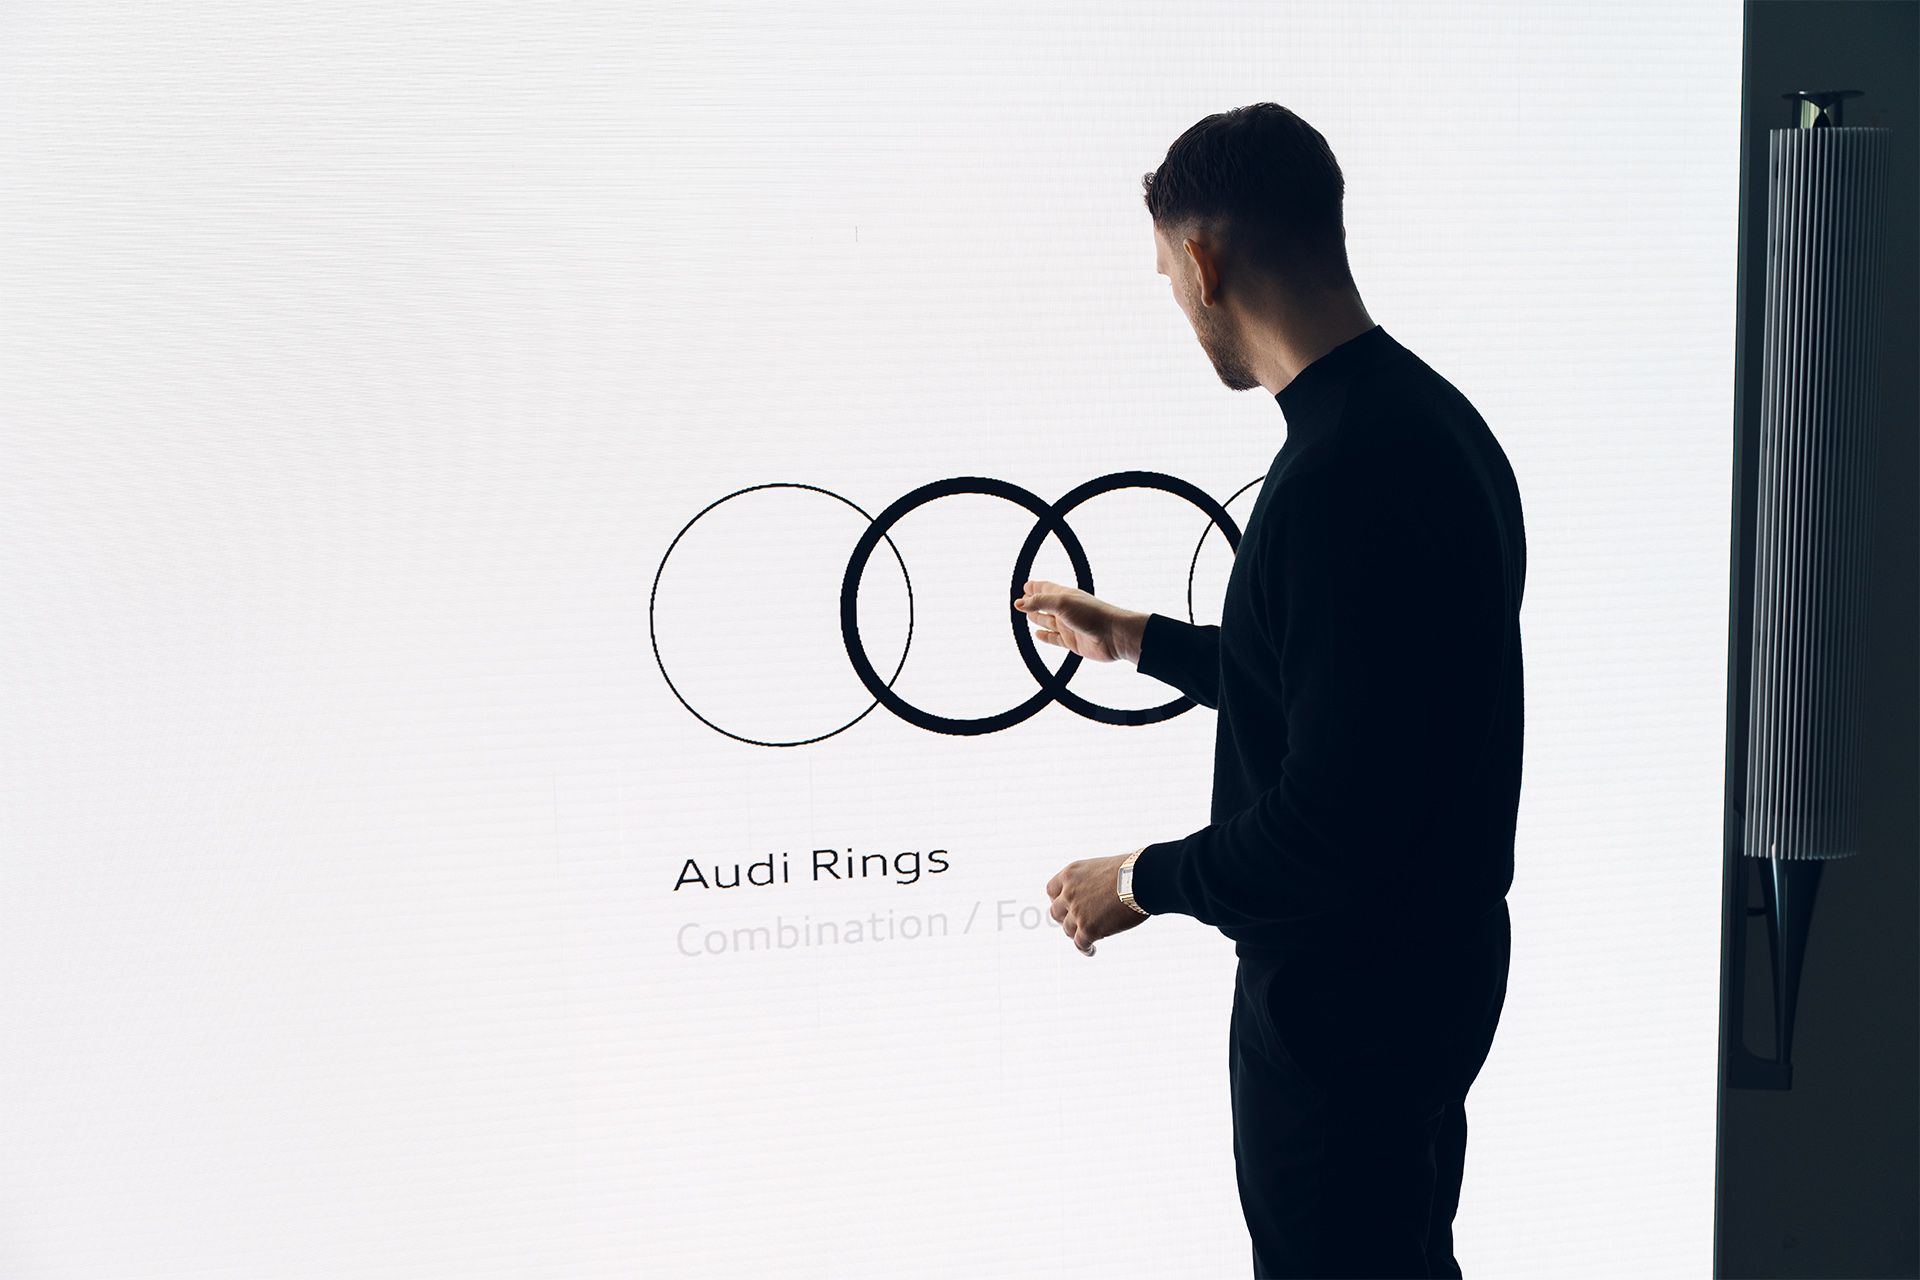 Audi-ringen op het beeldscherm.